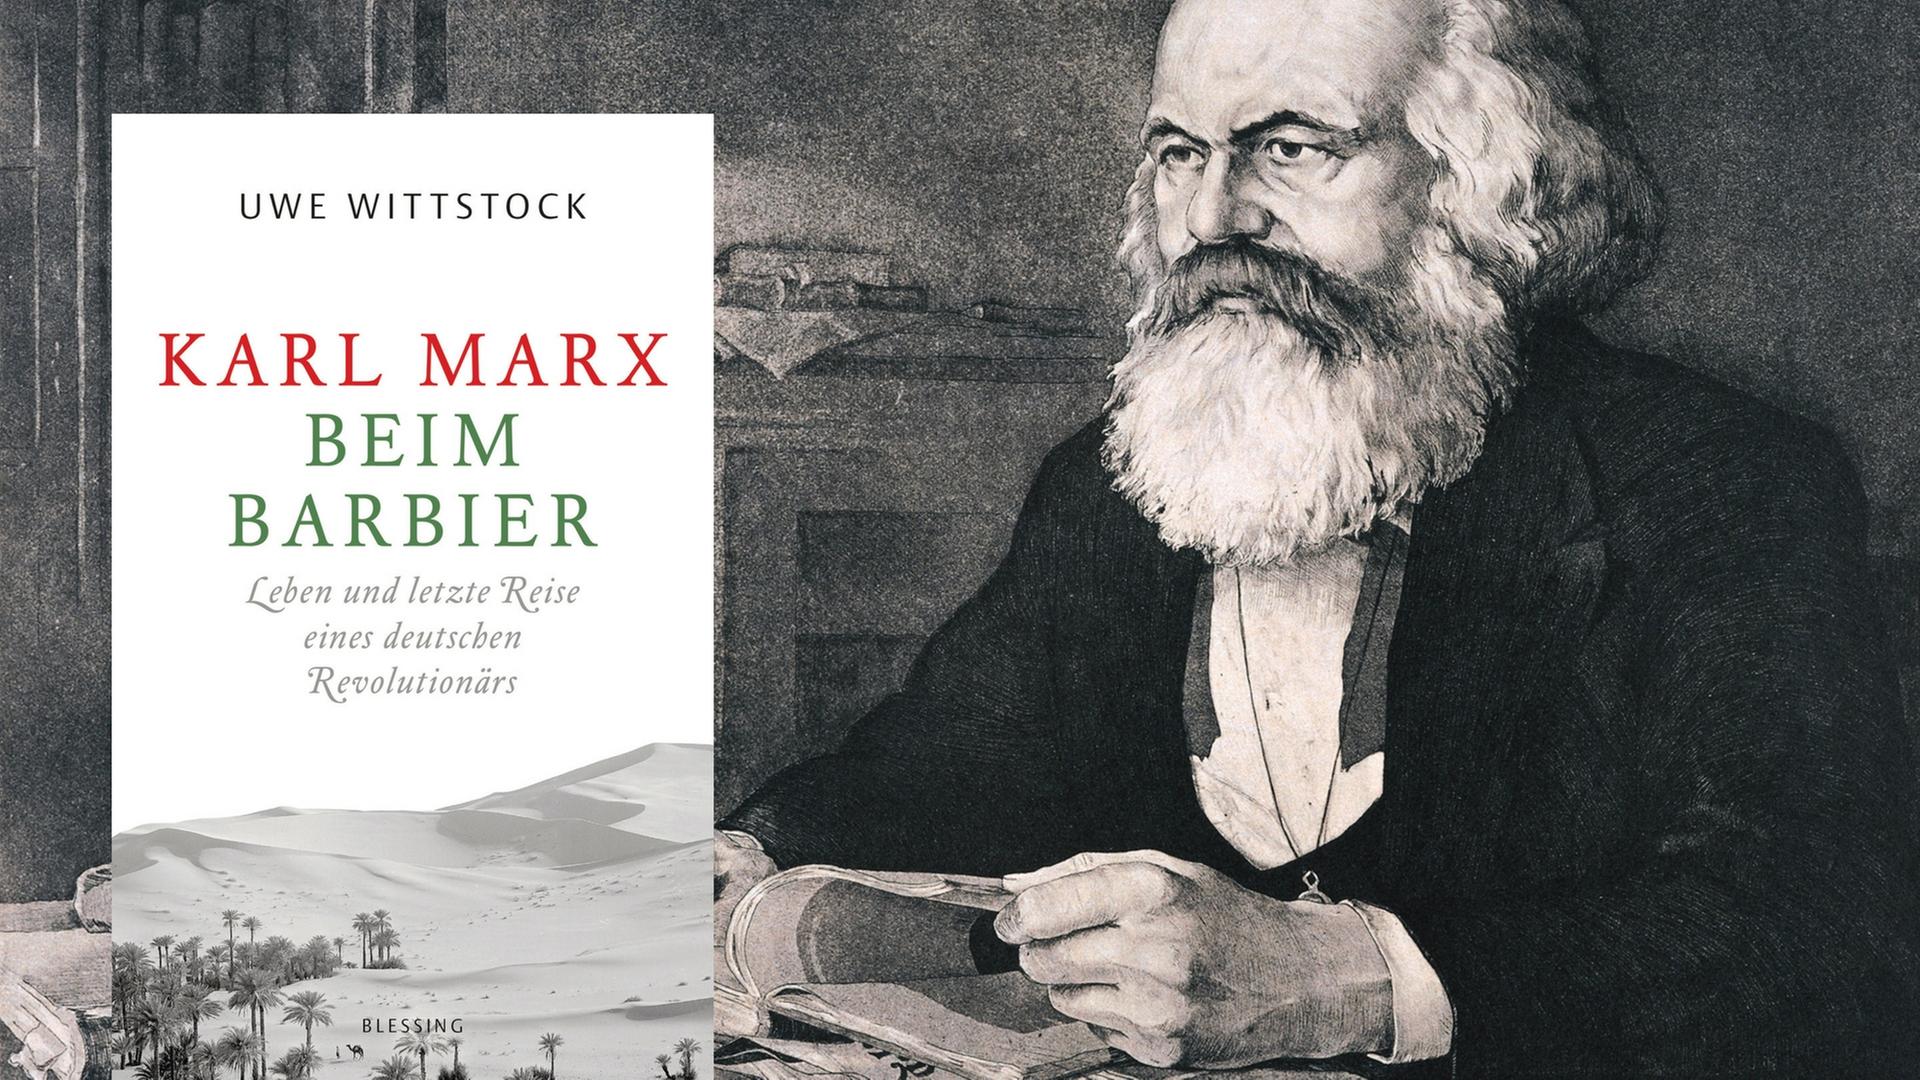 Buchcover: Uwe Wittstock: "Karl Marx beim Barbier. Leben und letzte Reise eines deutschen Revolutionärs."